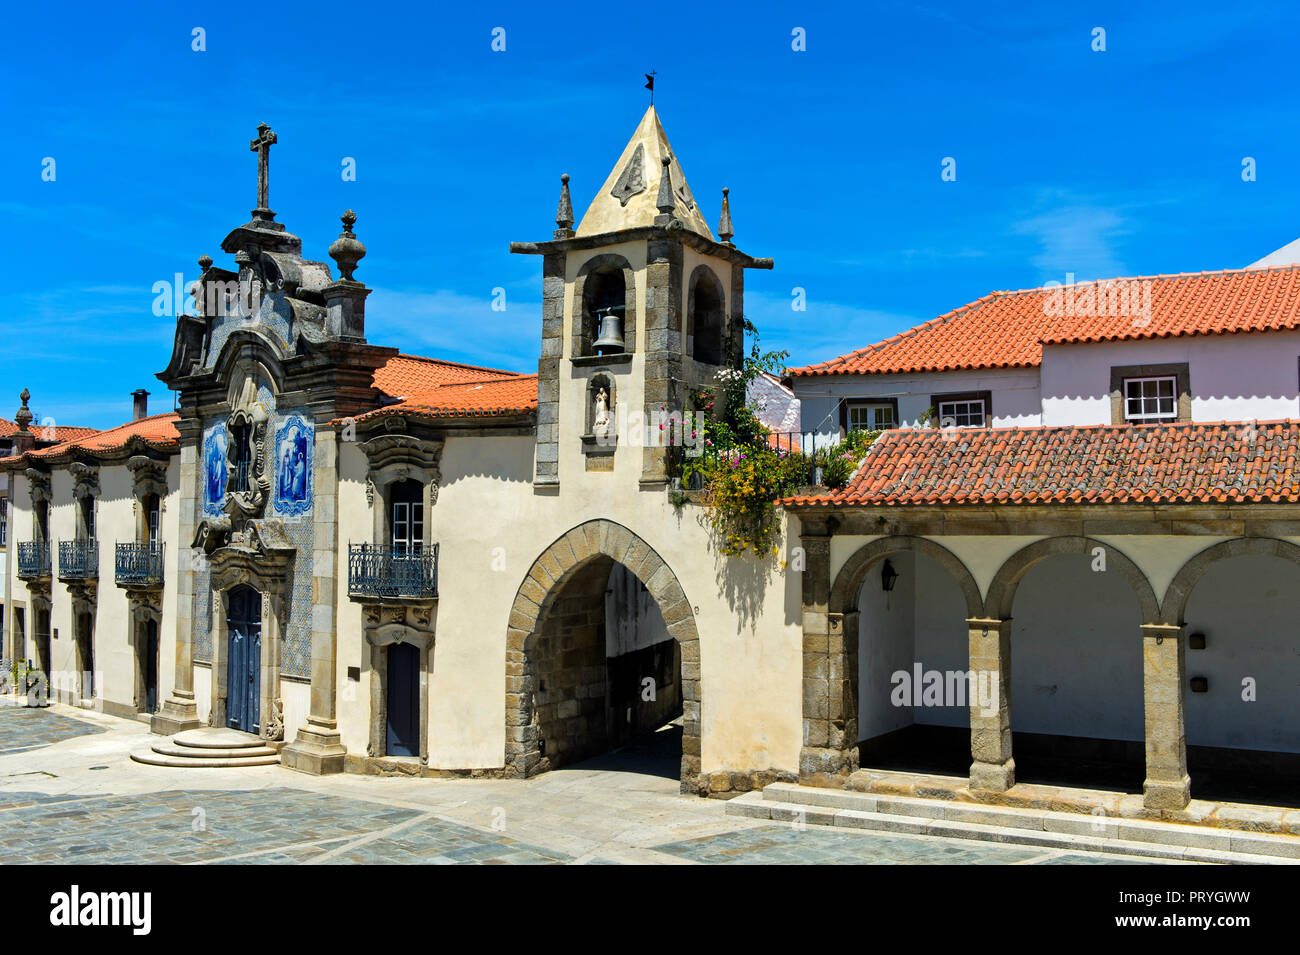 Chapel of Mercy and City Gate, Capela da Misericórdia, Sao Joao da Pesqueira, São João da Pesqueira, Portugal Stock Photo